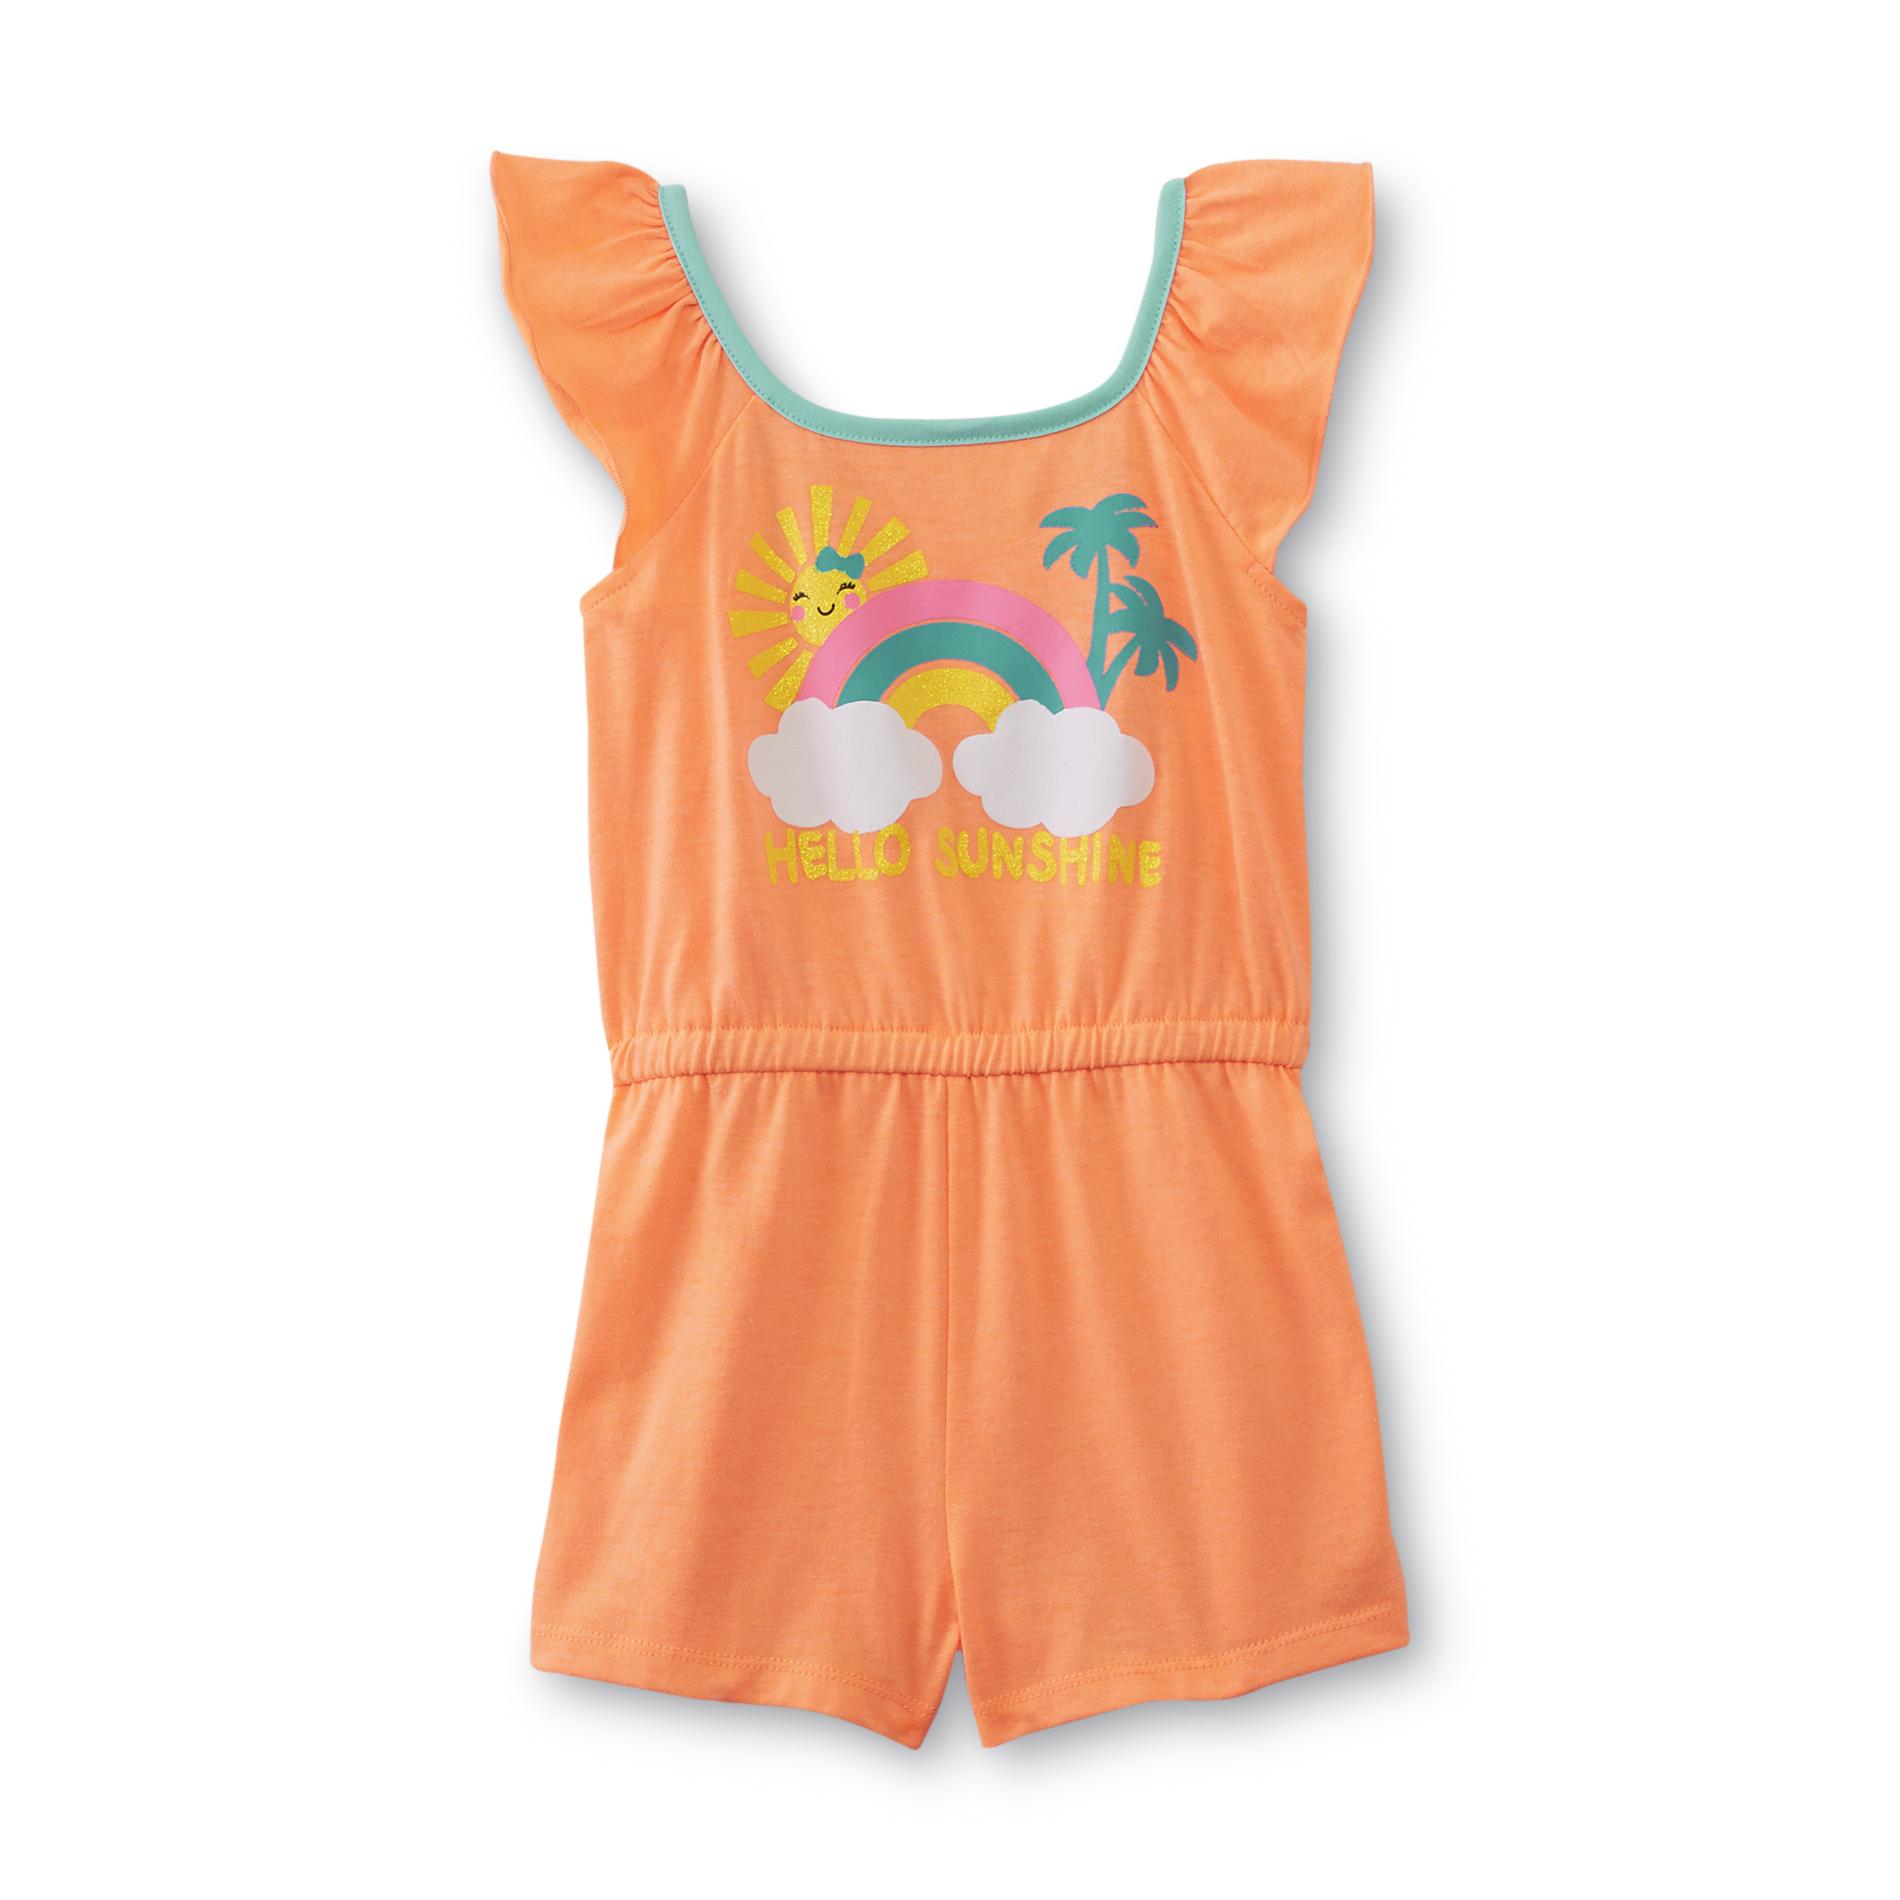 WonderKids infant & Toddler Girl's Romper - Hello Sunshine